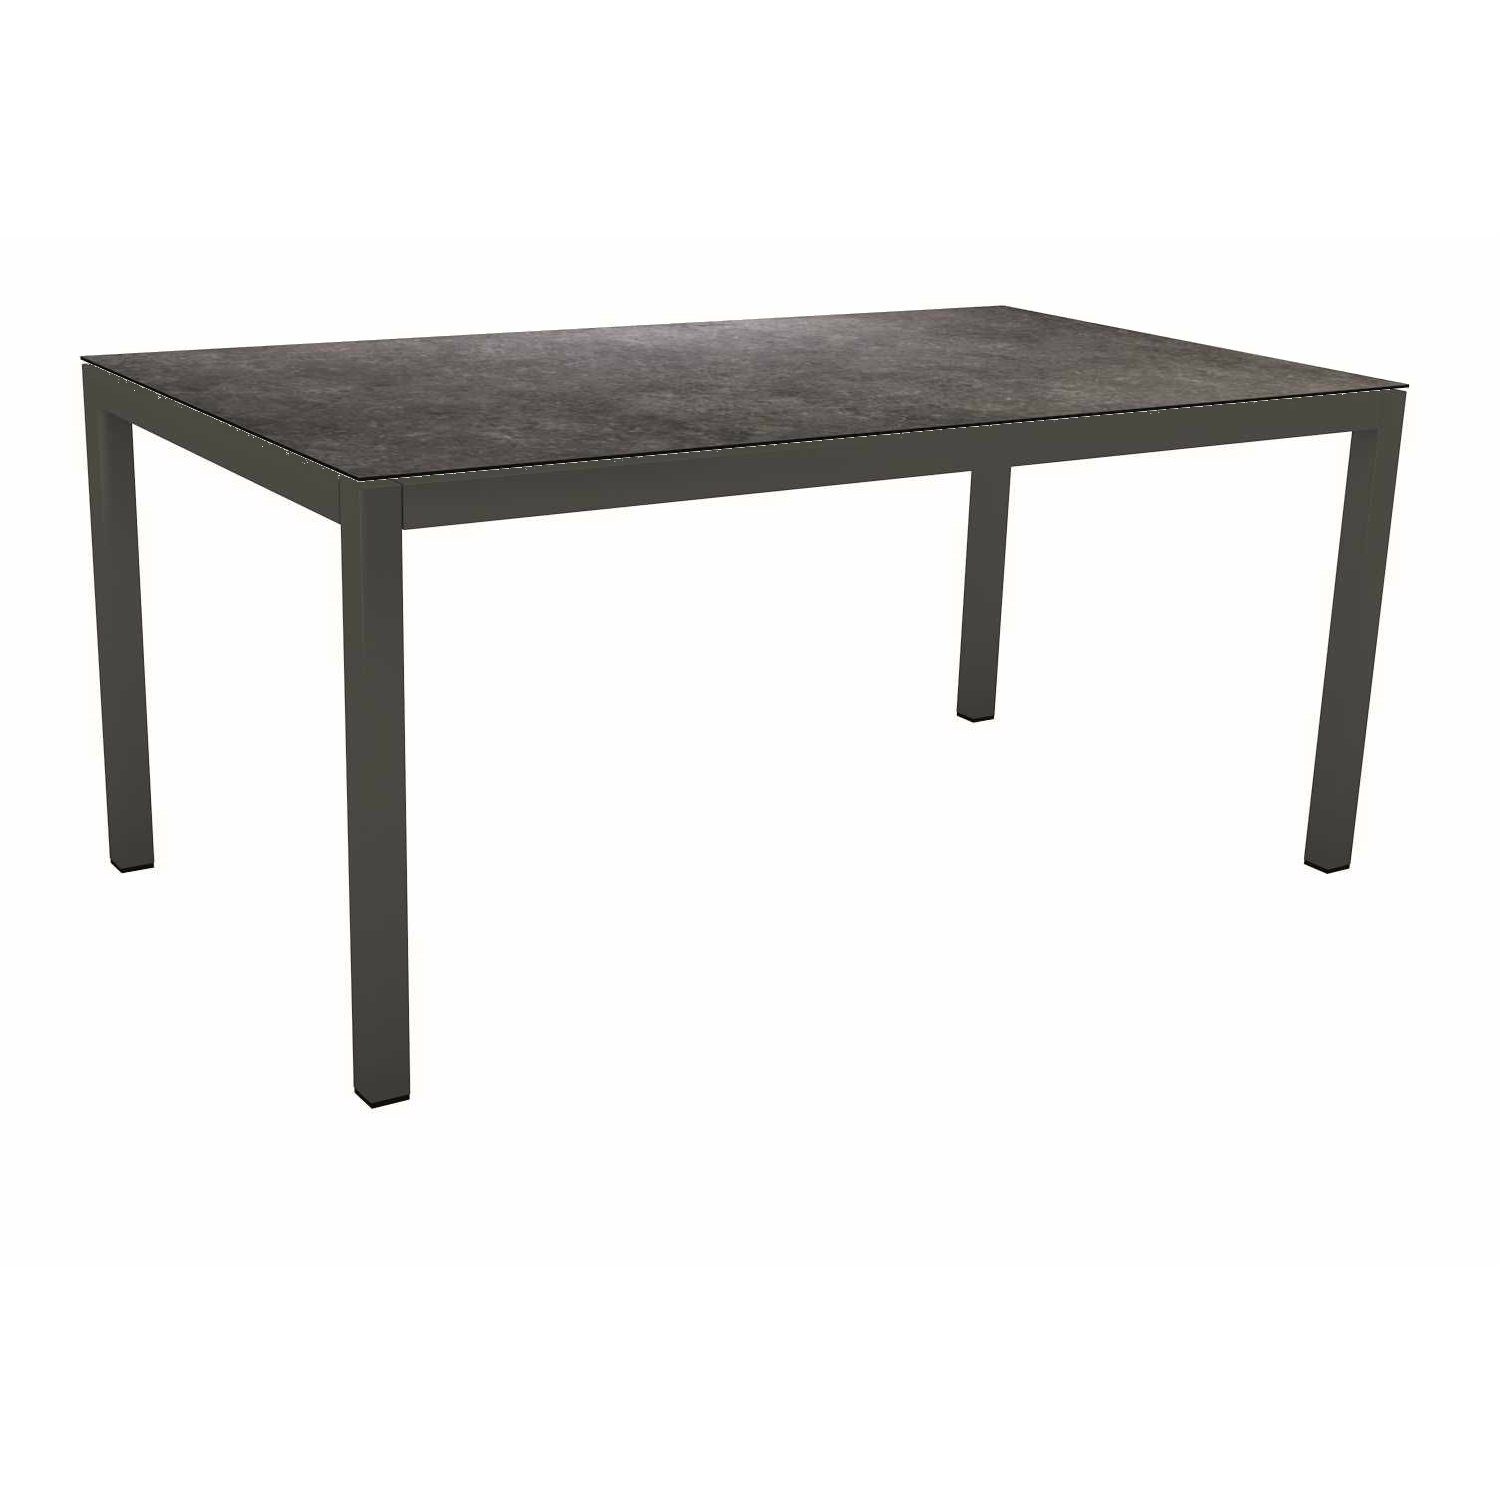 Stern Tischsystem Gartentisch, Gestell Aluminium anthrazit, Tischplatte HPL Vintage grau, Maße: 130x80 cm